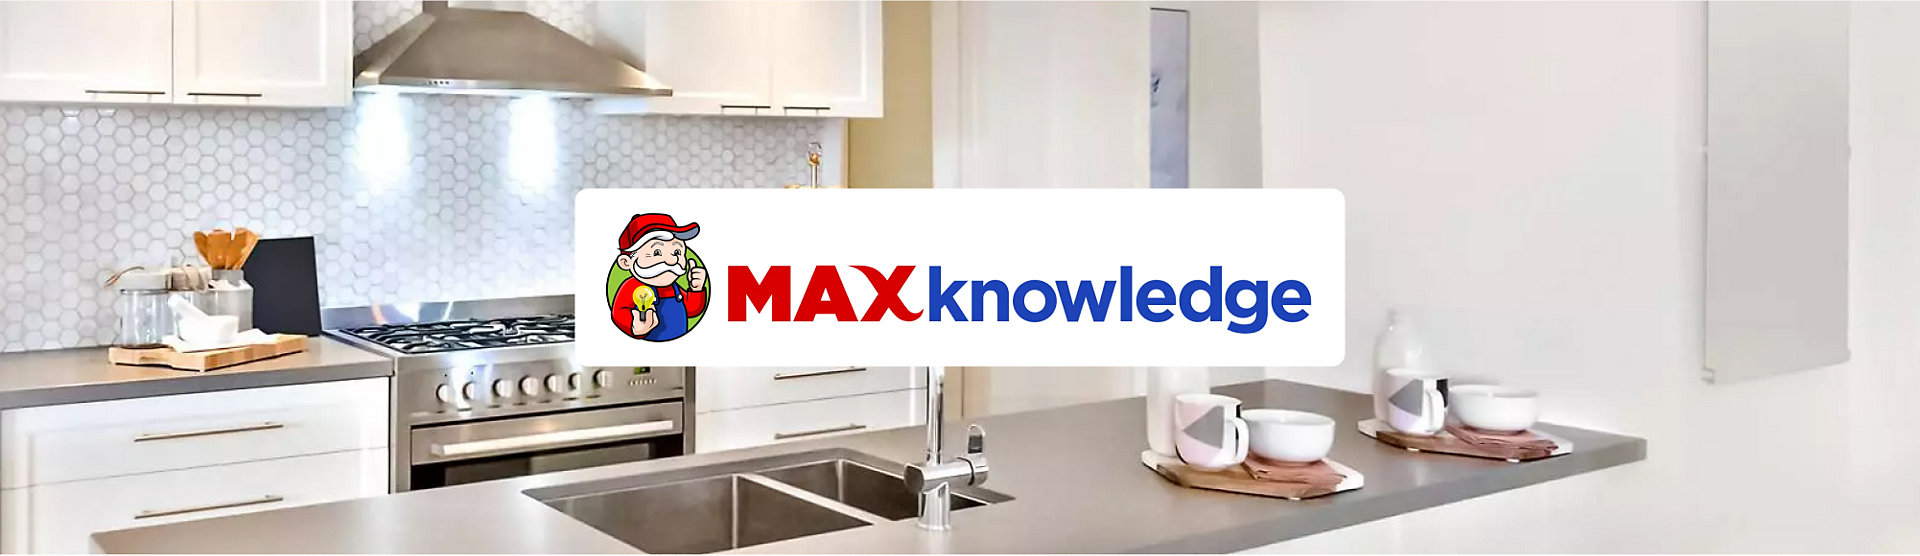 MAX Knowledge Hero